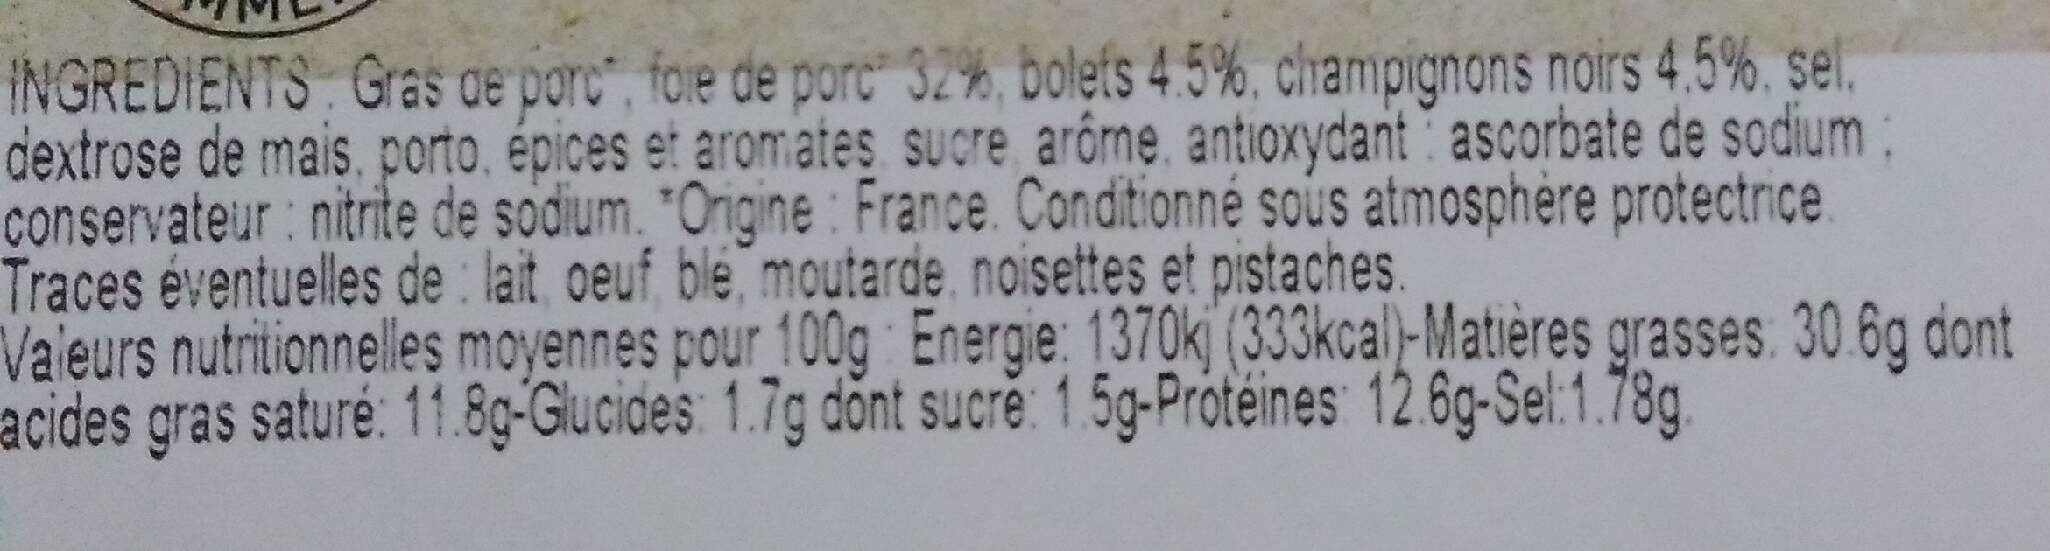 Mousse de foie forestière - Nutrition facts - fr